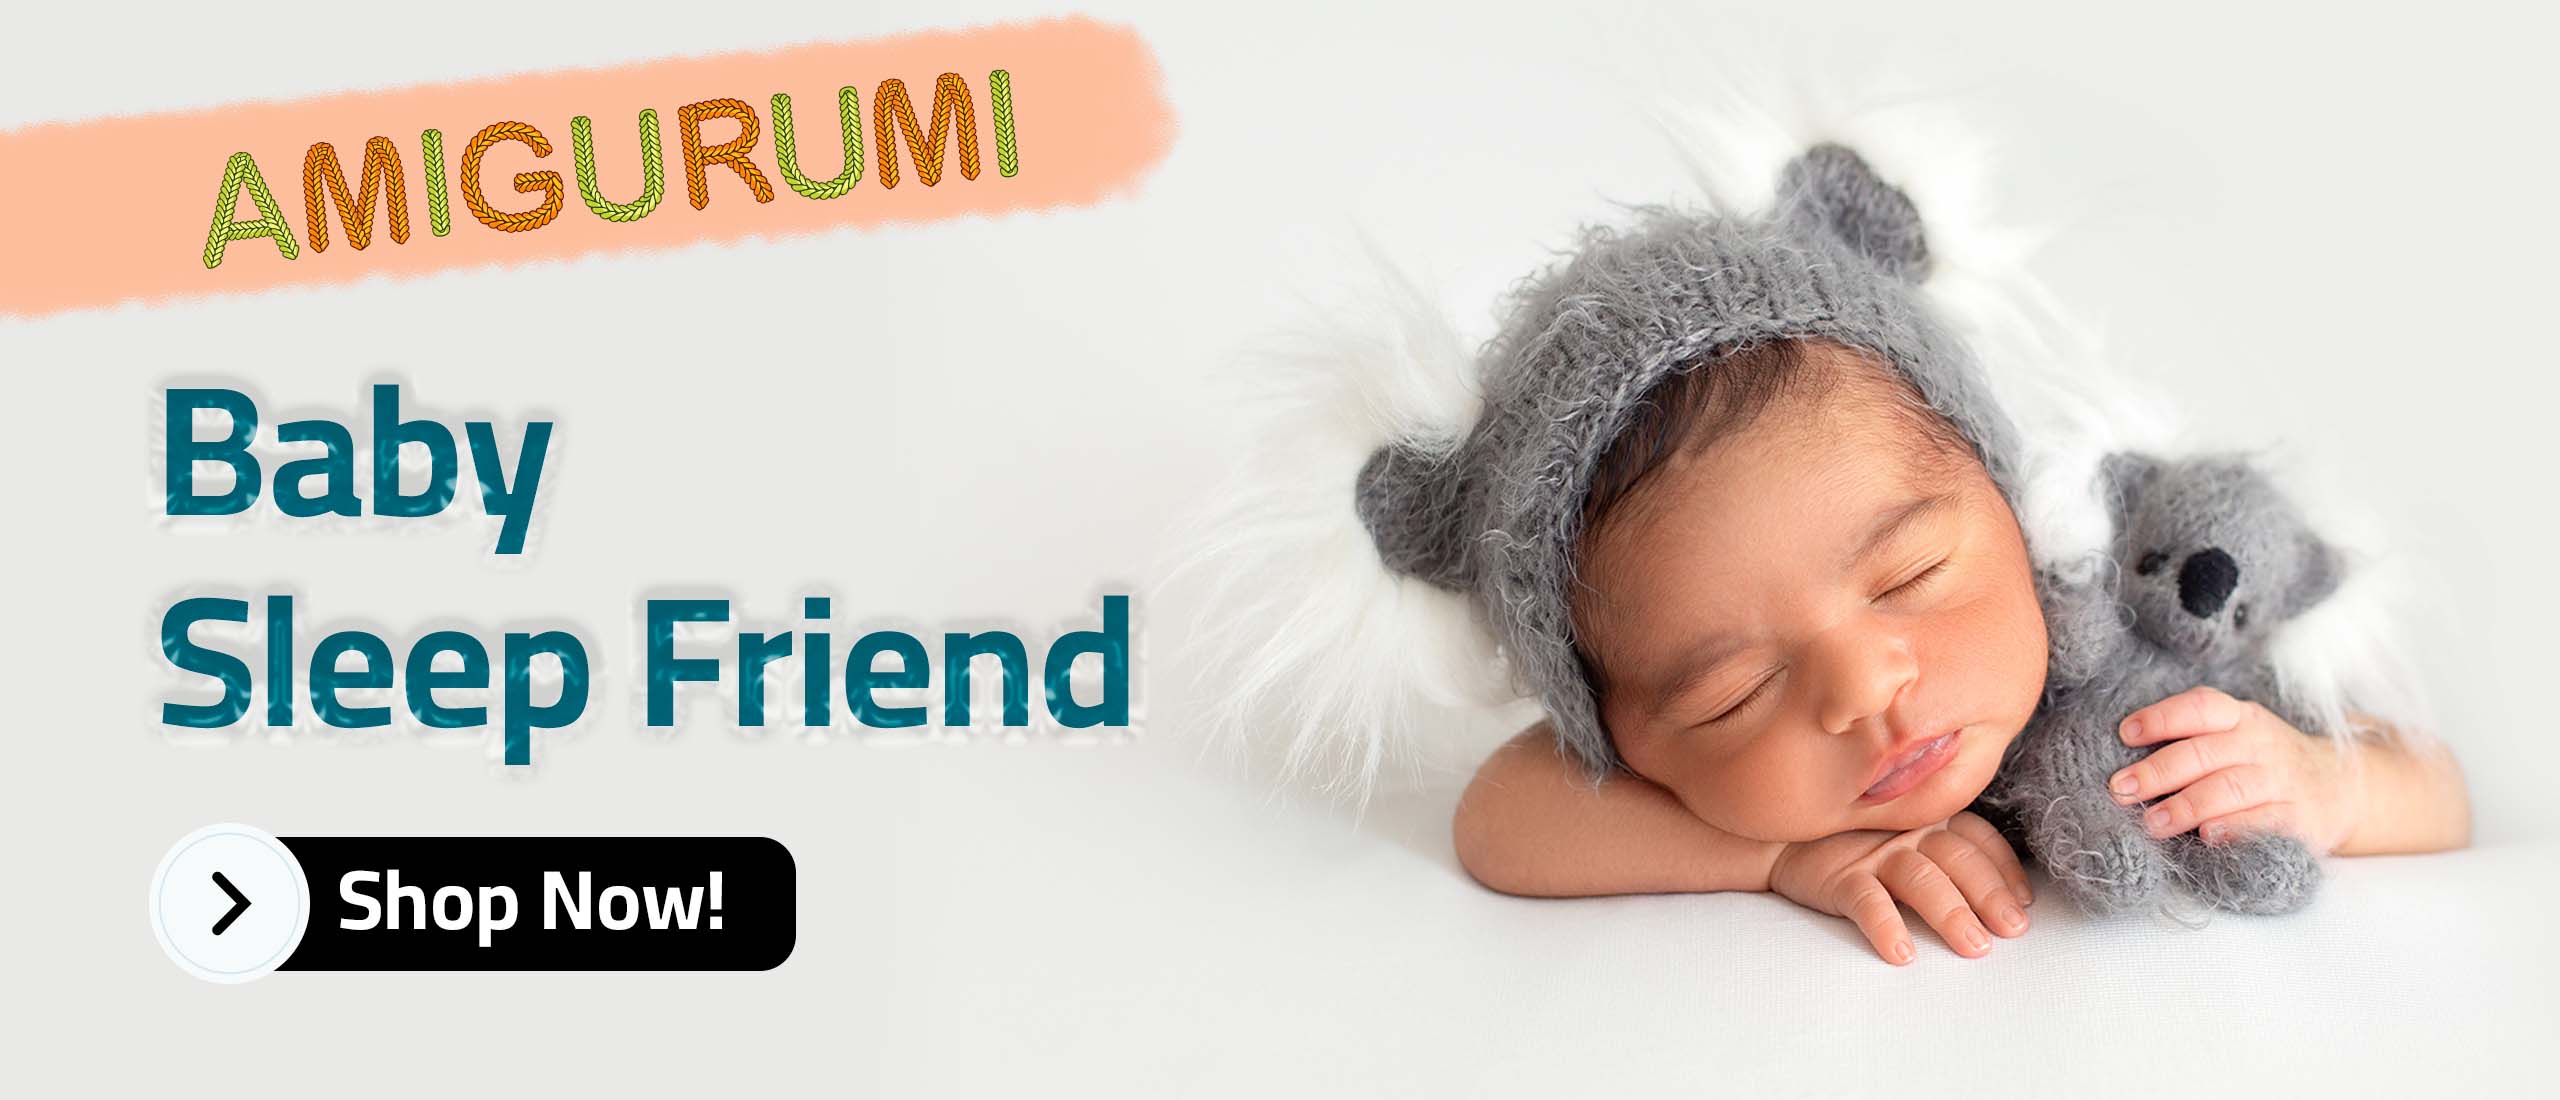 Amigurumi Baby Sleep Friend